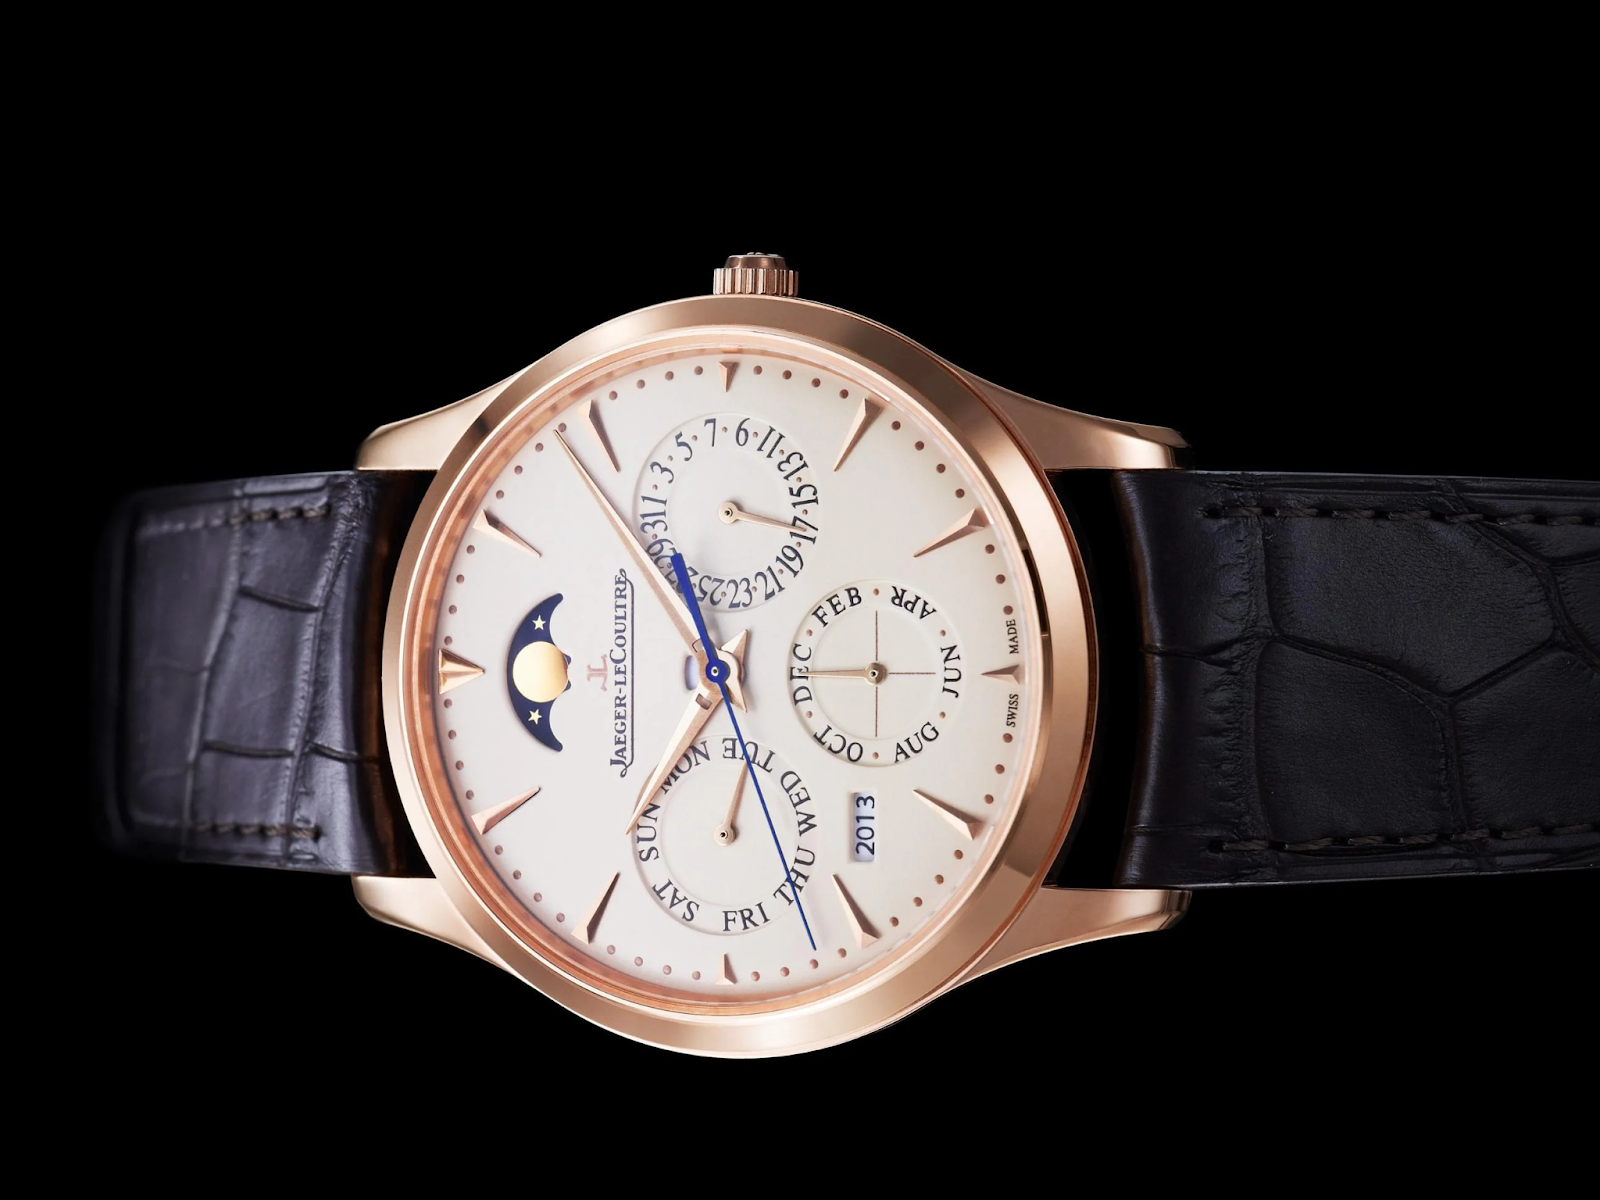 Đồng hồ Jaeger-lecoultre nổi tiếng sang trọng